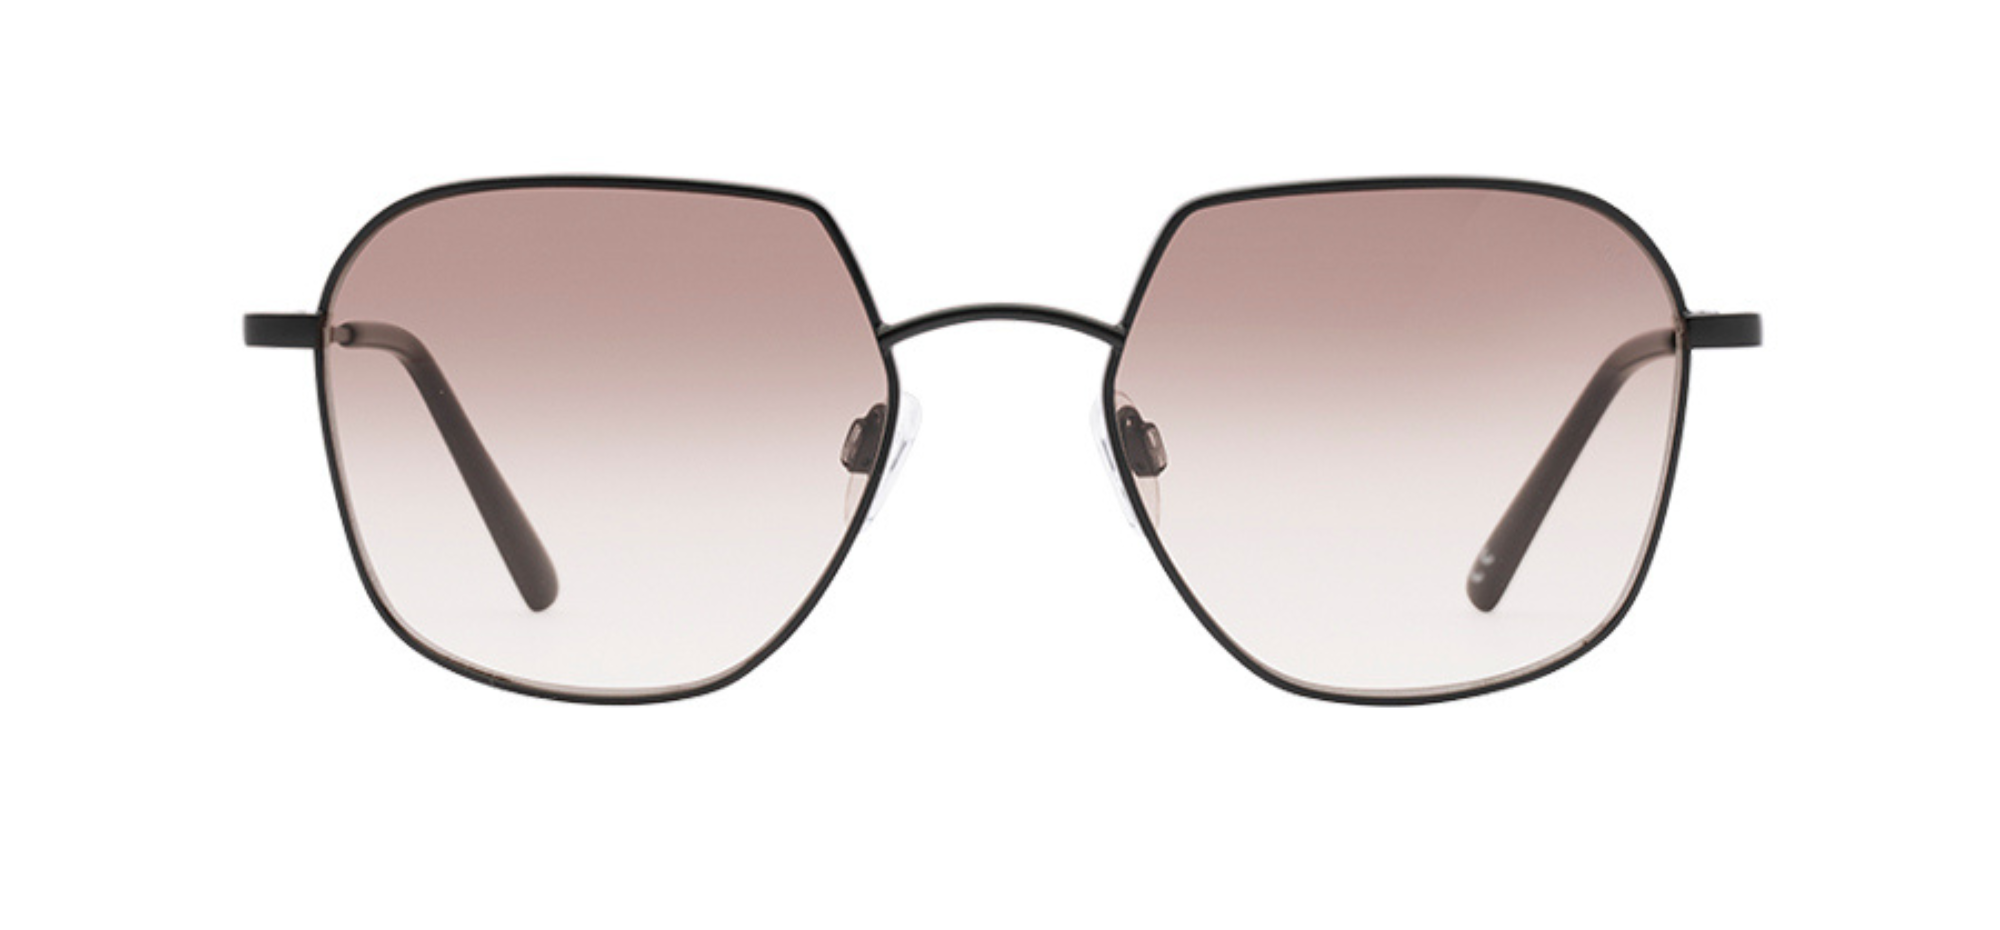 Norrevik solglasögonbåge - Smarteyes